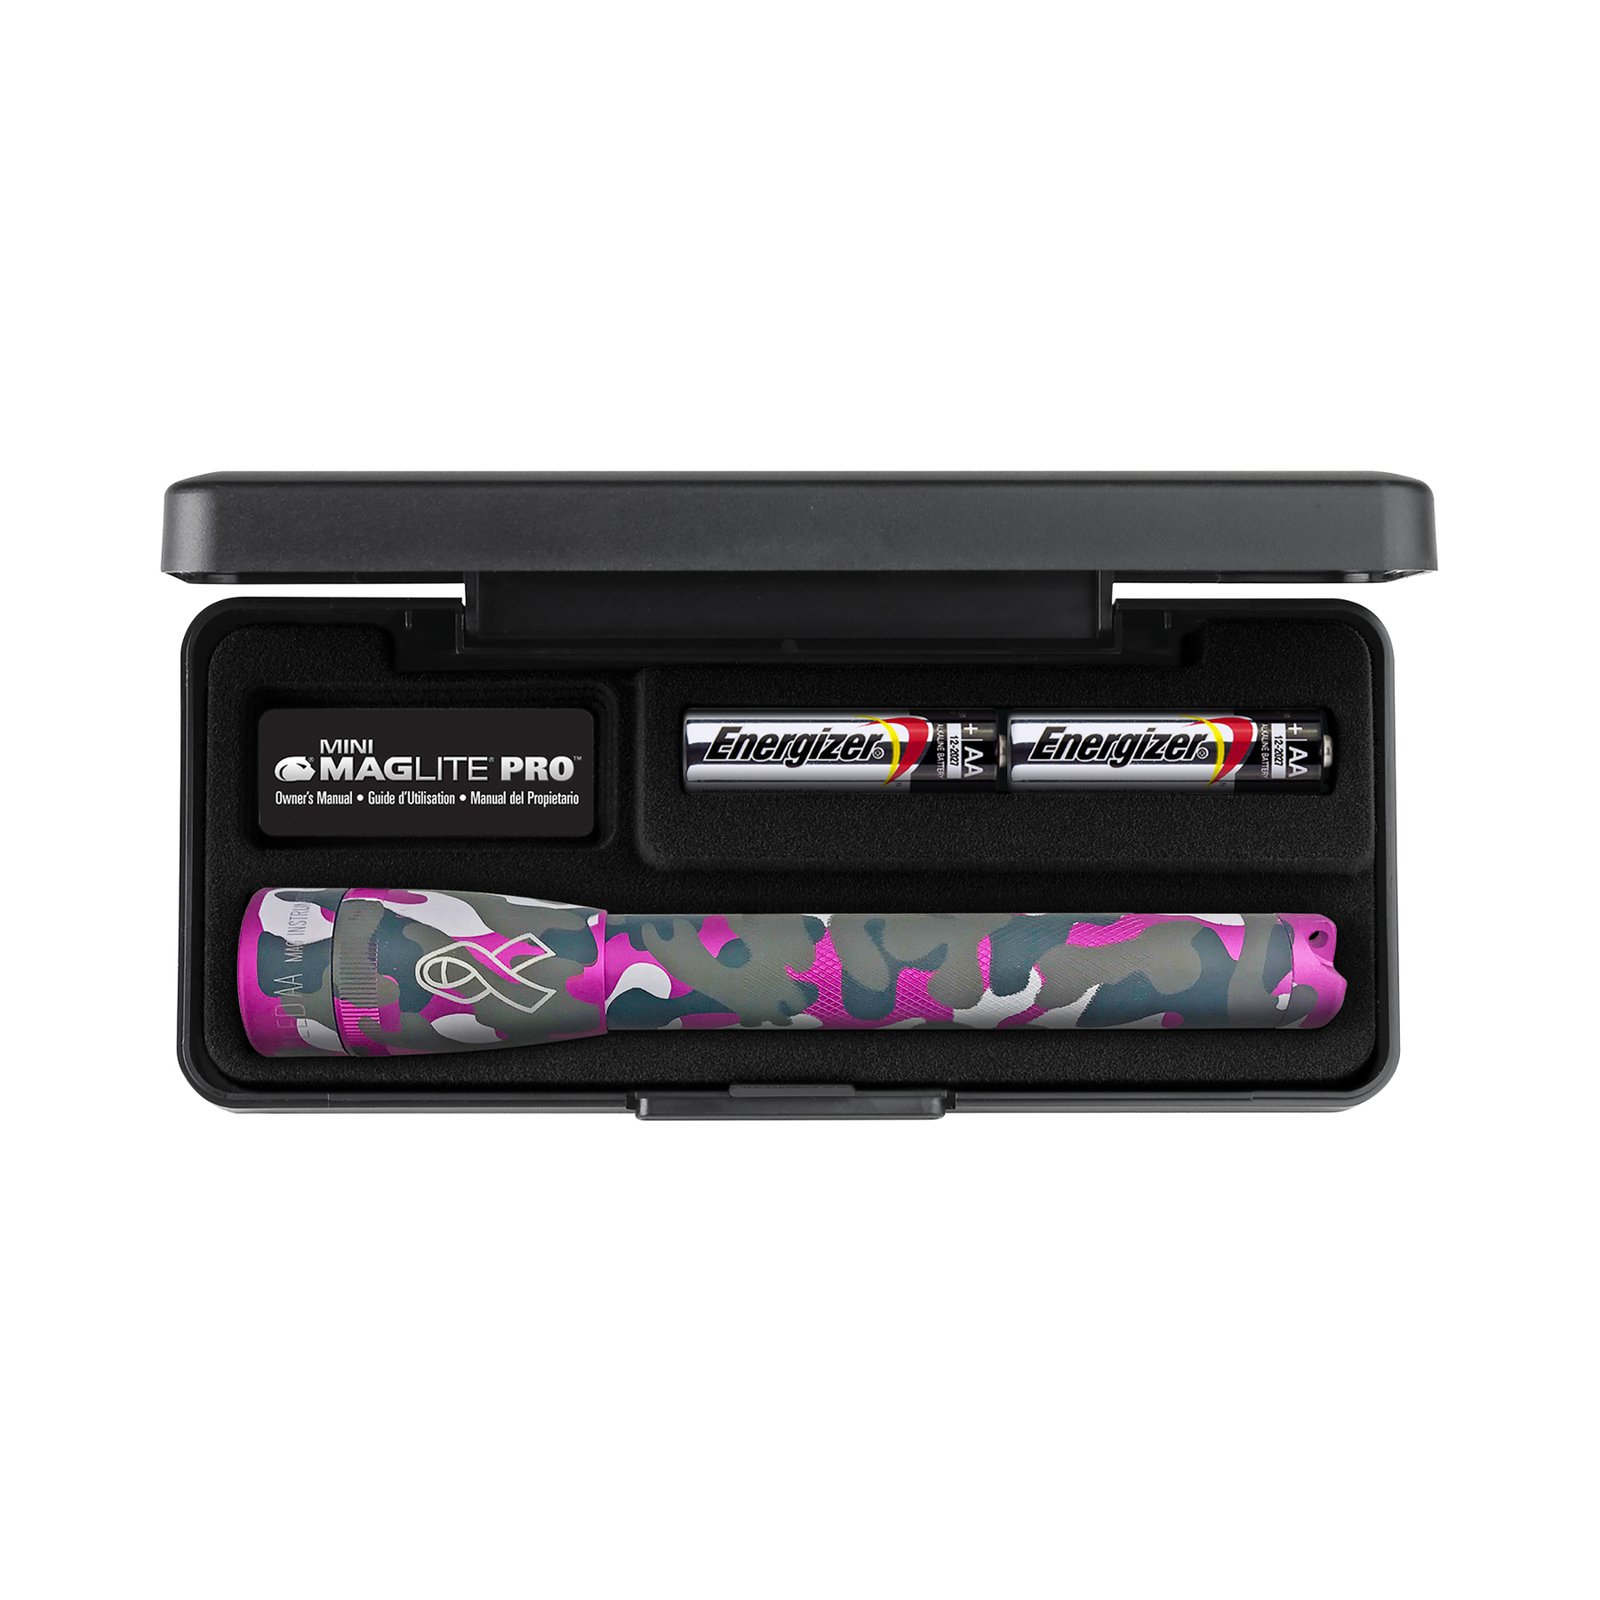 Svítilna Maglite LED Mini Pro, 2xAA, NBCF růžová kamufláž, krabice